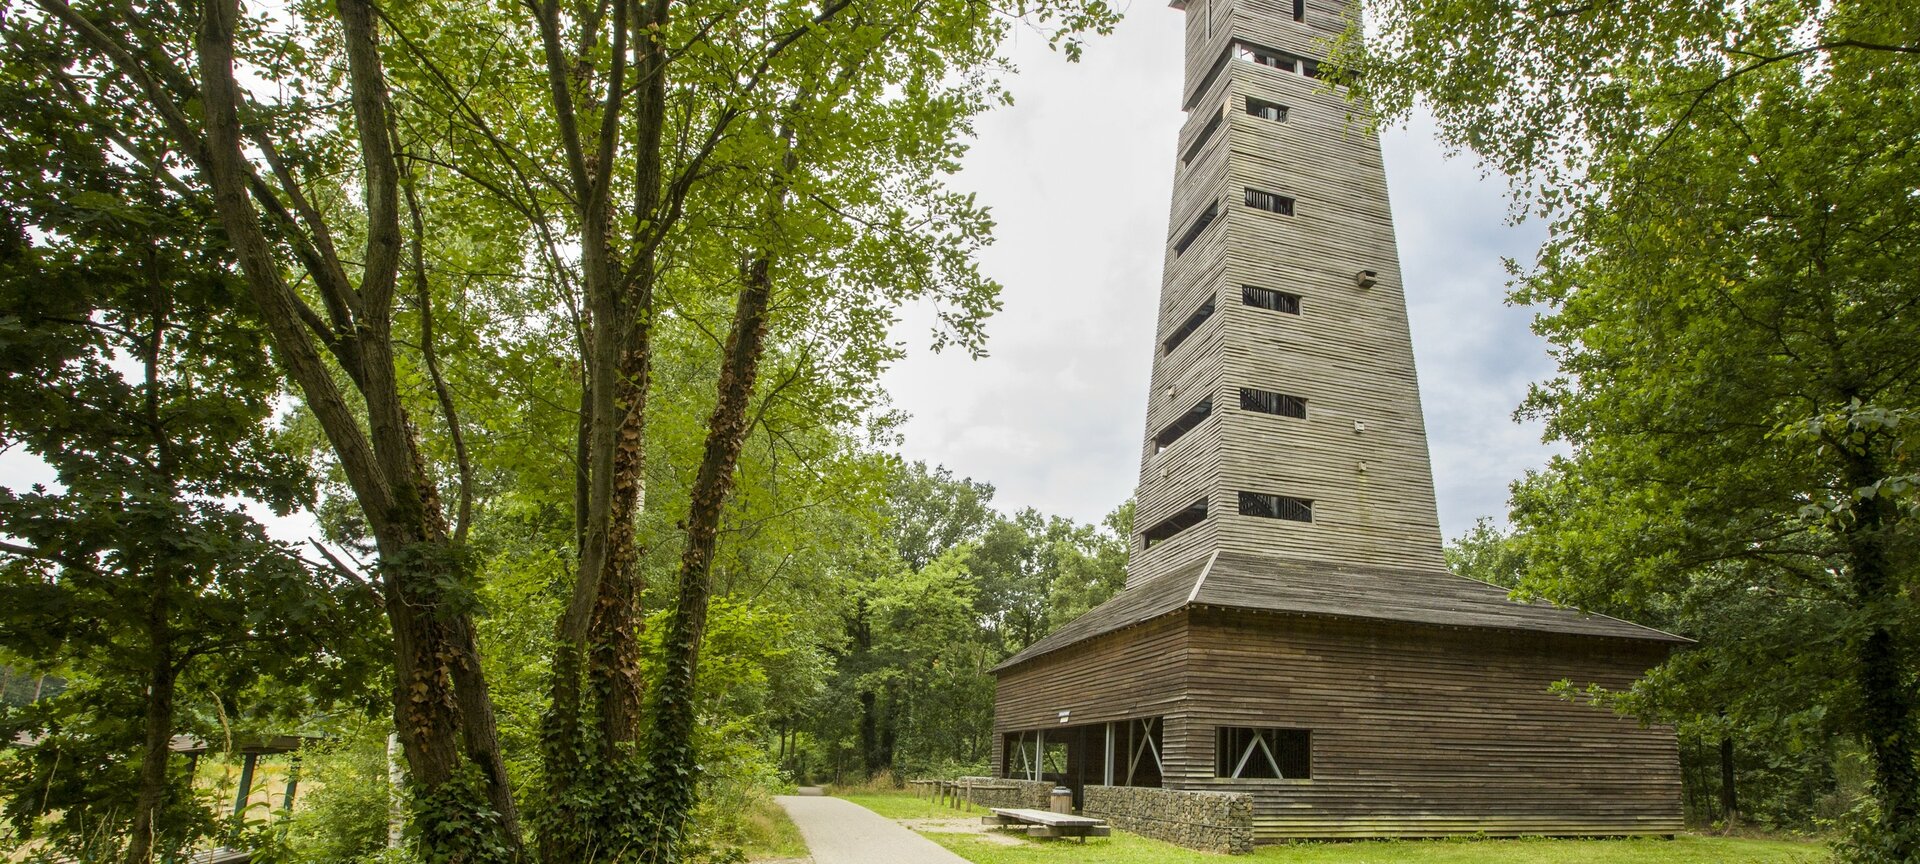 Uitkijktoren - uitkijktoren